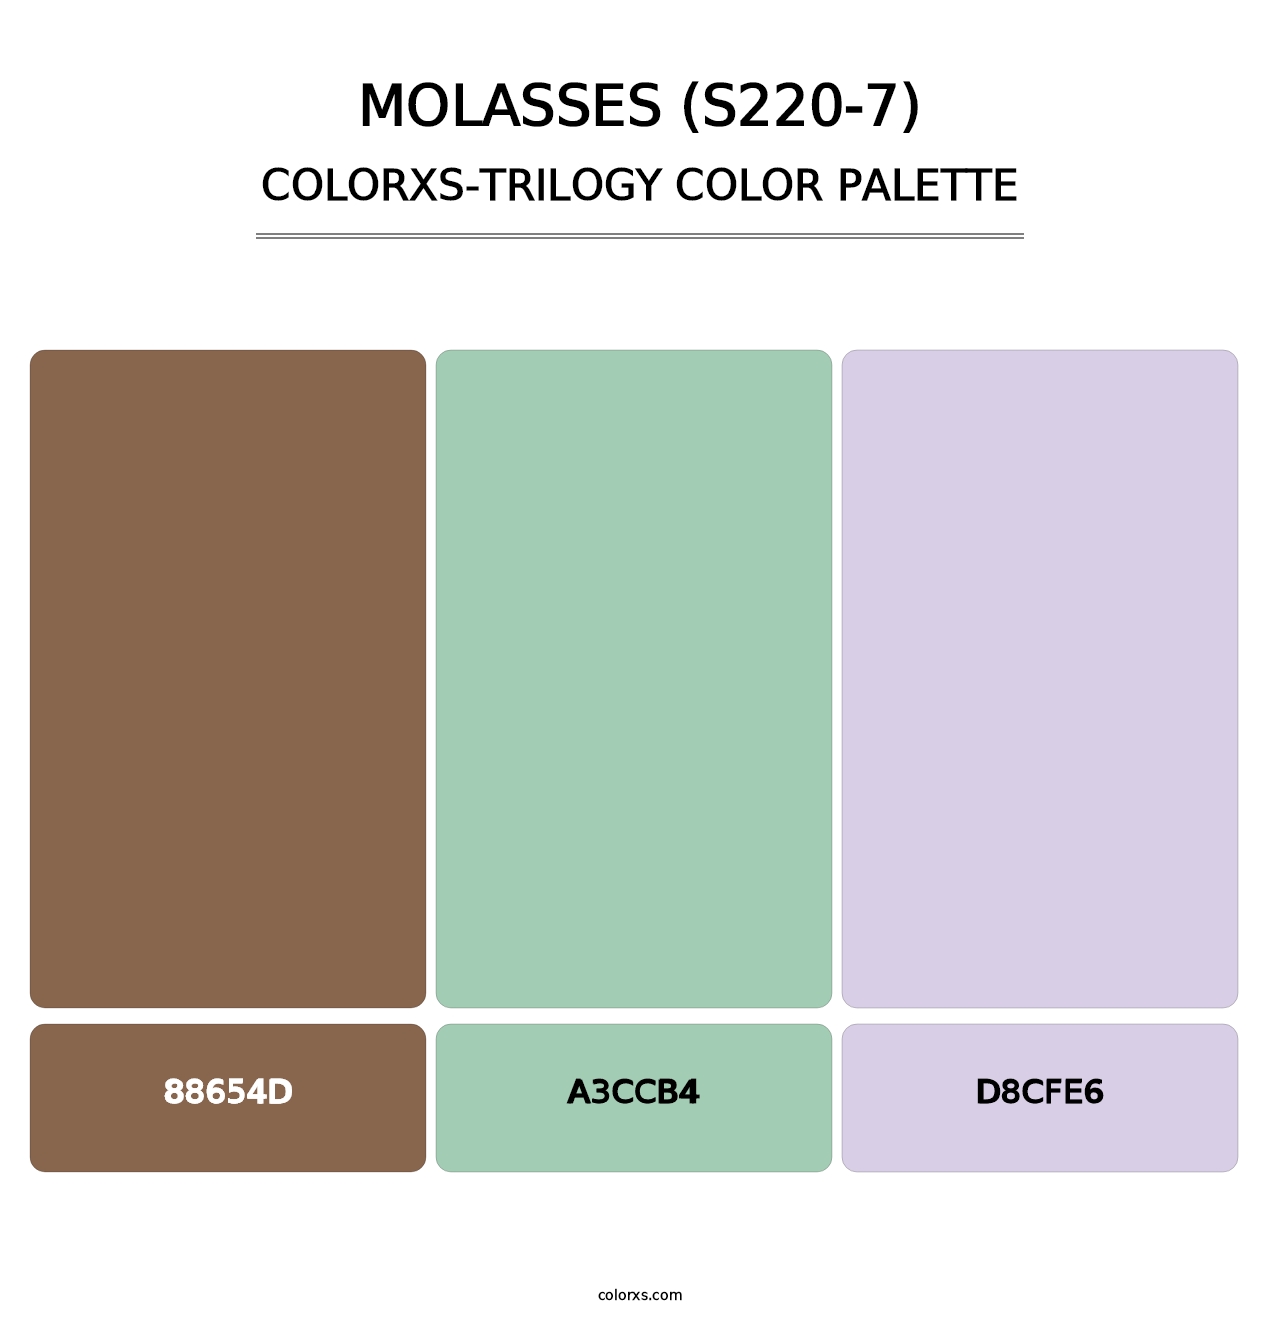 Molasses (S220-7) - Colorxs Trilogy Palette